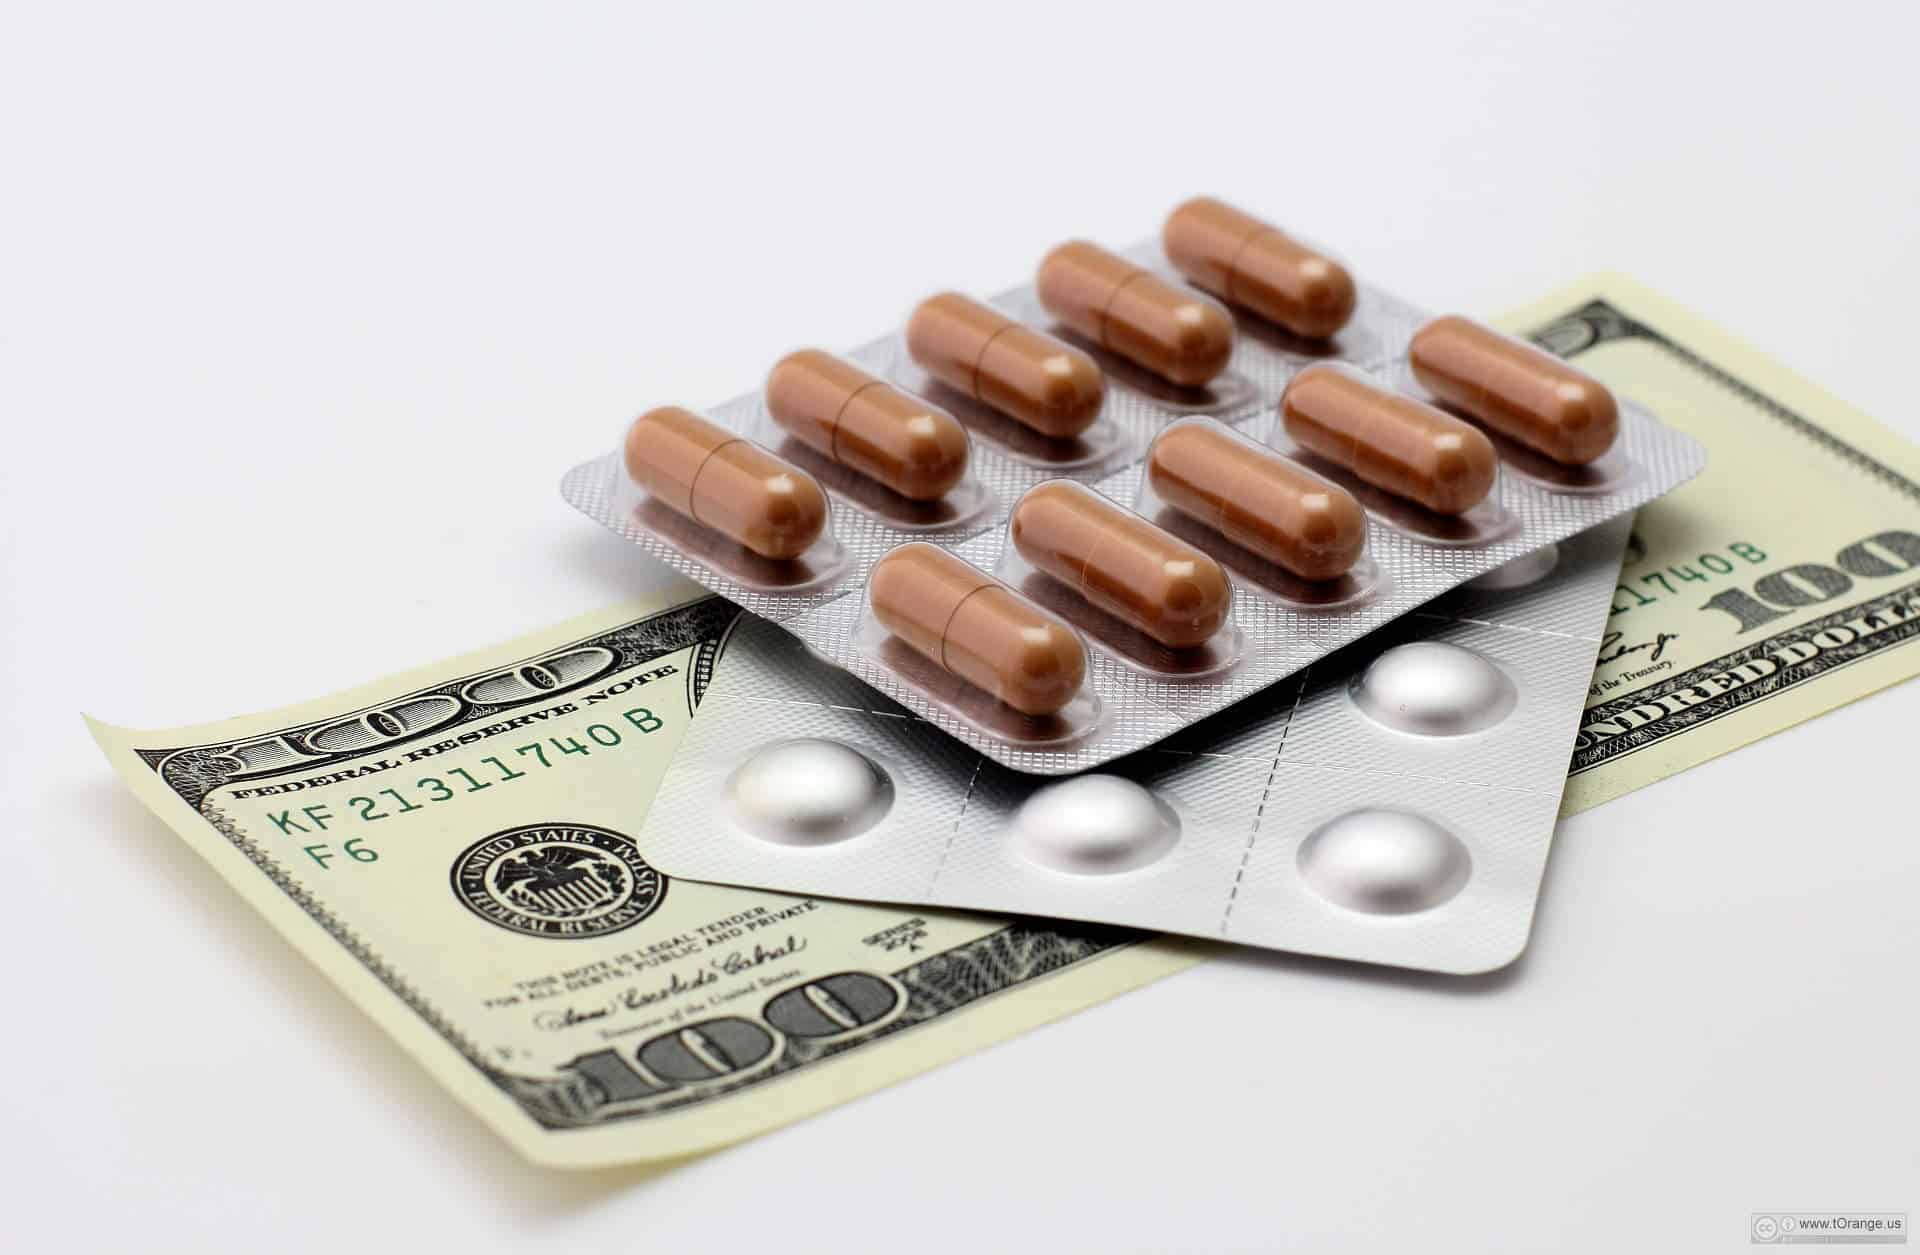 Из-за роста цен на лекарства предлагается изменить сроки годности средств для гумпомощи